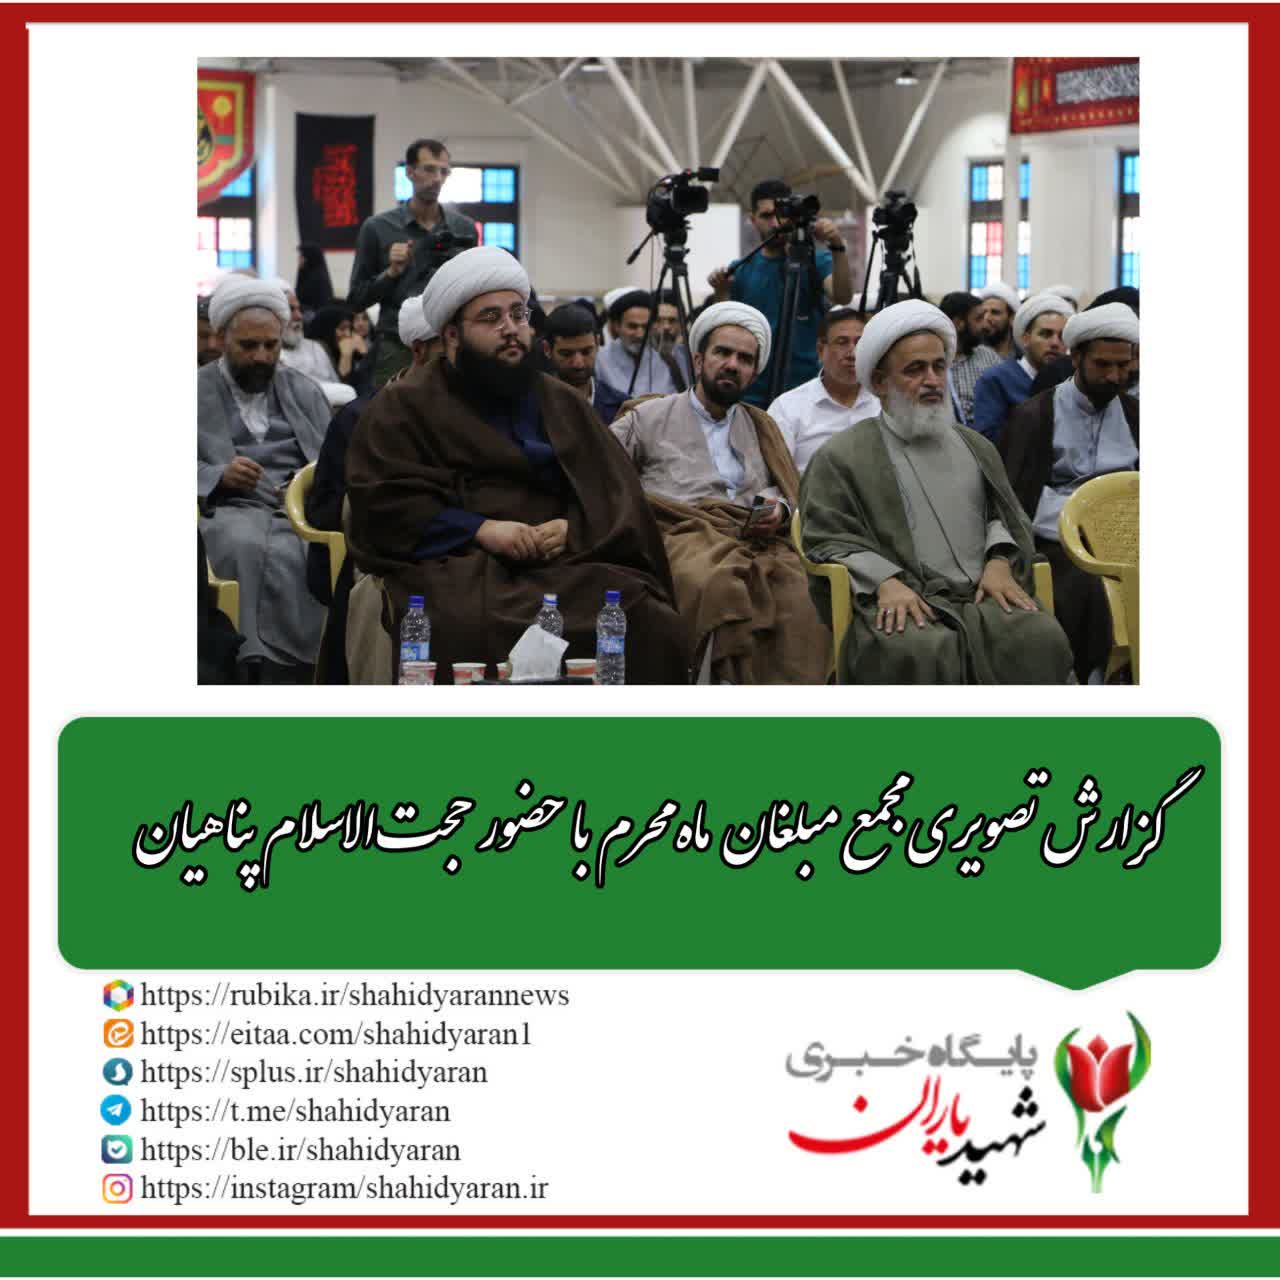 گزارش تصویری مجمع مبلغان ماه محرم با حضور حجت الاسلام پناهیان